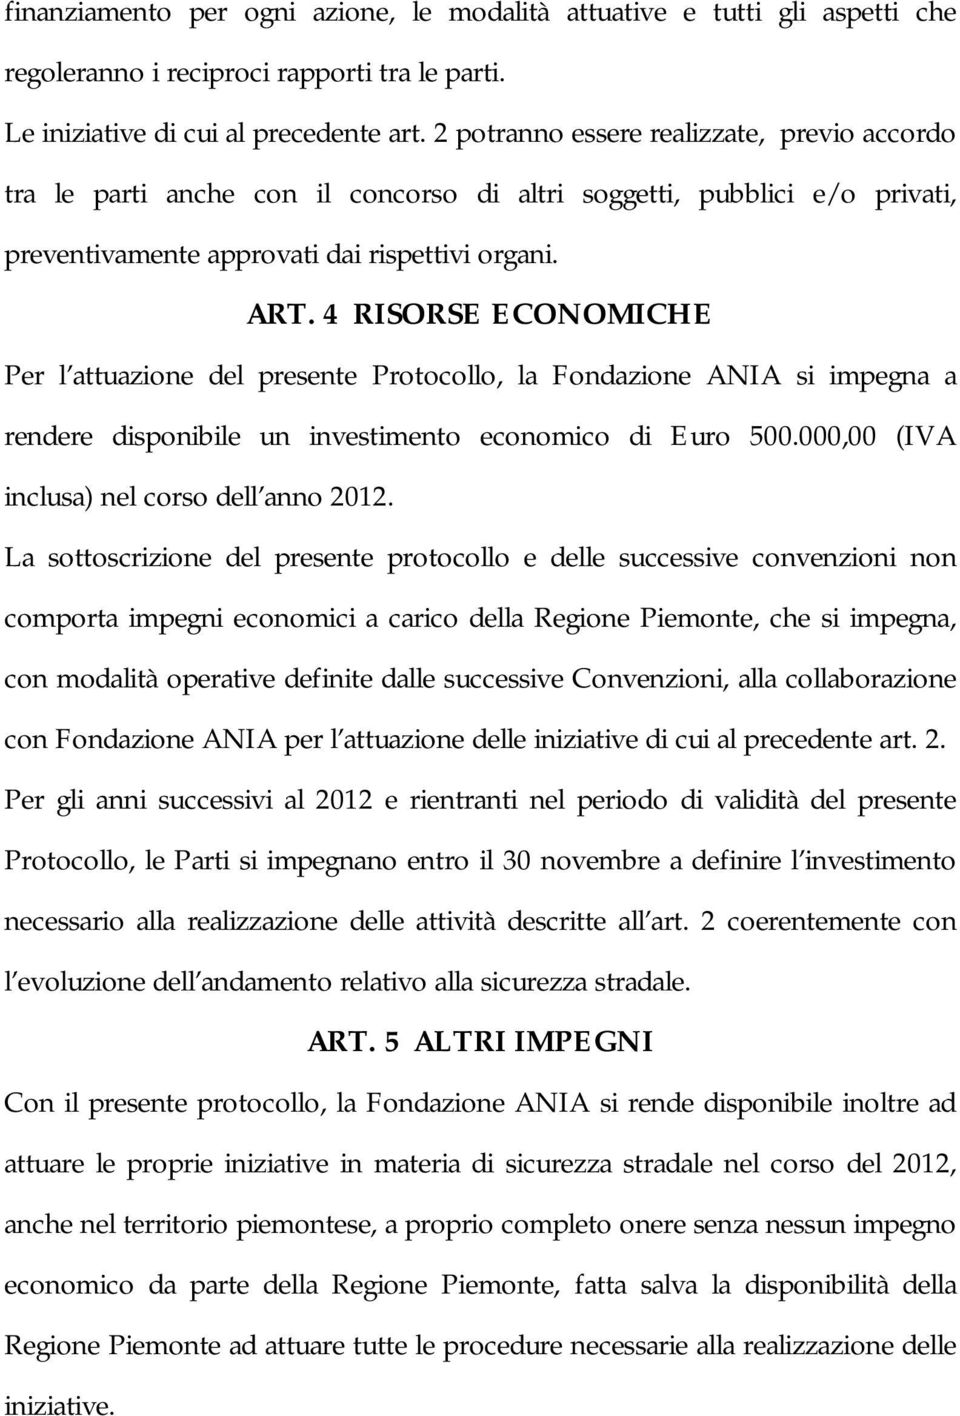 4 RISORSE ECONOMICHE Per l attuazione del presente Protocollo, la Fondazione ANIA si impegna a rendere disponibile un investimento economico di Euro 500.000,00 (IVA inclusa) nel corso dell anno 2012.